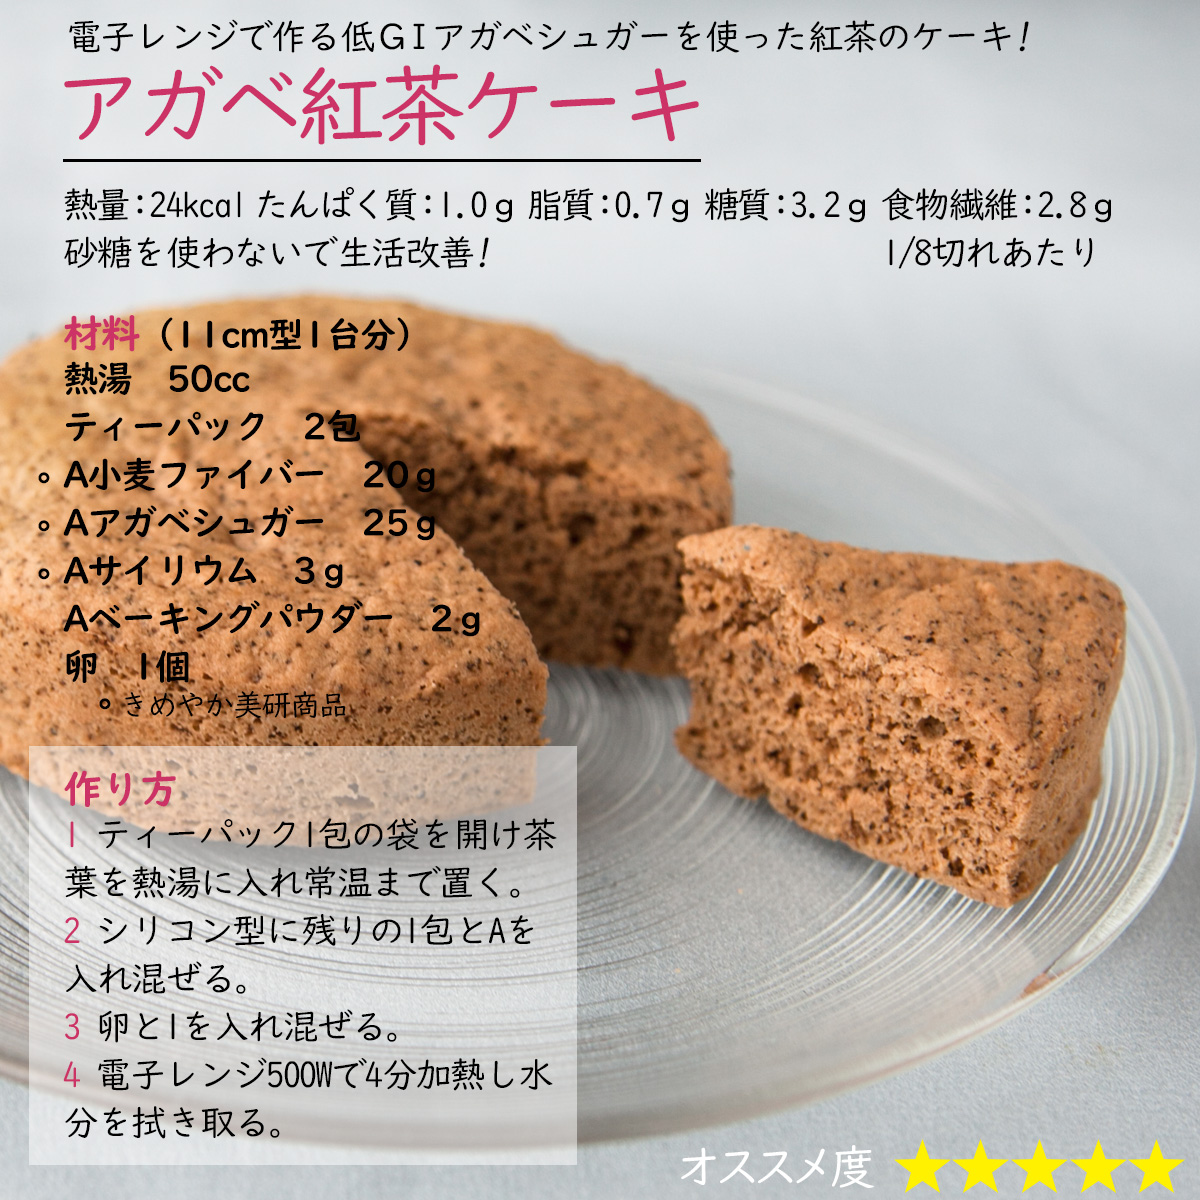 アガベ紅茶ケーキ電子レンジで作る低ＧＩアガベシュガーを使った紅茶のケーキ!熱量：24kcal たんぱく質：1.0ｇ 脂質：0.7ｇ 糖質：3.2ｇ 食物繊維：2.8ｇ1/8切れあたり砂糖を使わないで生活改善!材料（11cm型1台分）熱湯　50ccティーパック　2包A小麦ファイバー　20ｇAアガベシュガー　25ｇAサイリウム　3ｇAベーキングパウダー　2ｇ卵　1個作り方1 ティーパック1包の袋を開け茶葉を熱湯に入れ常温まで置く。2 シリコン型に残りの1包とAを入れ混ぜる。3 卵と1を入れ混ぜる。4 電子レンジ500Wで4分加熱し水分を拭き取る。